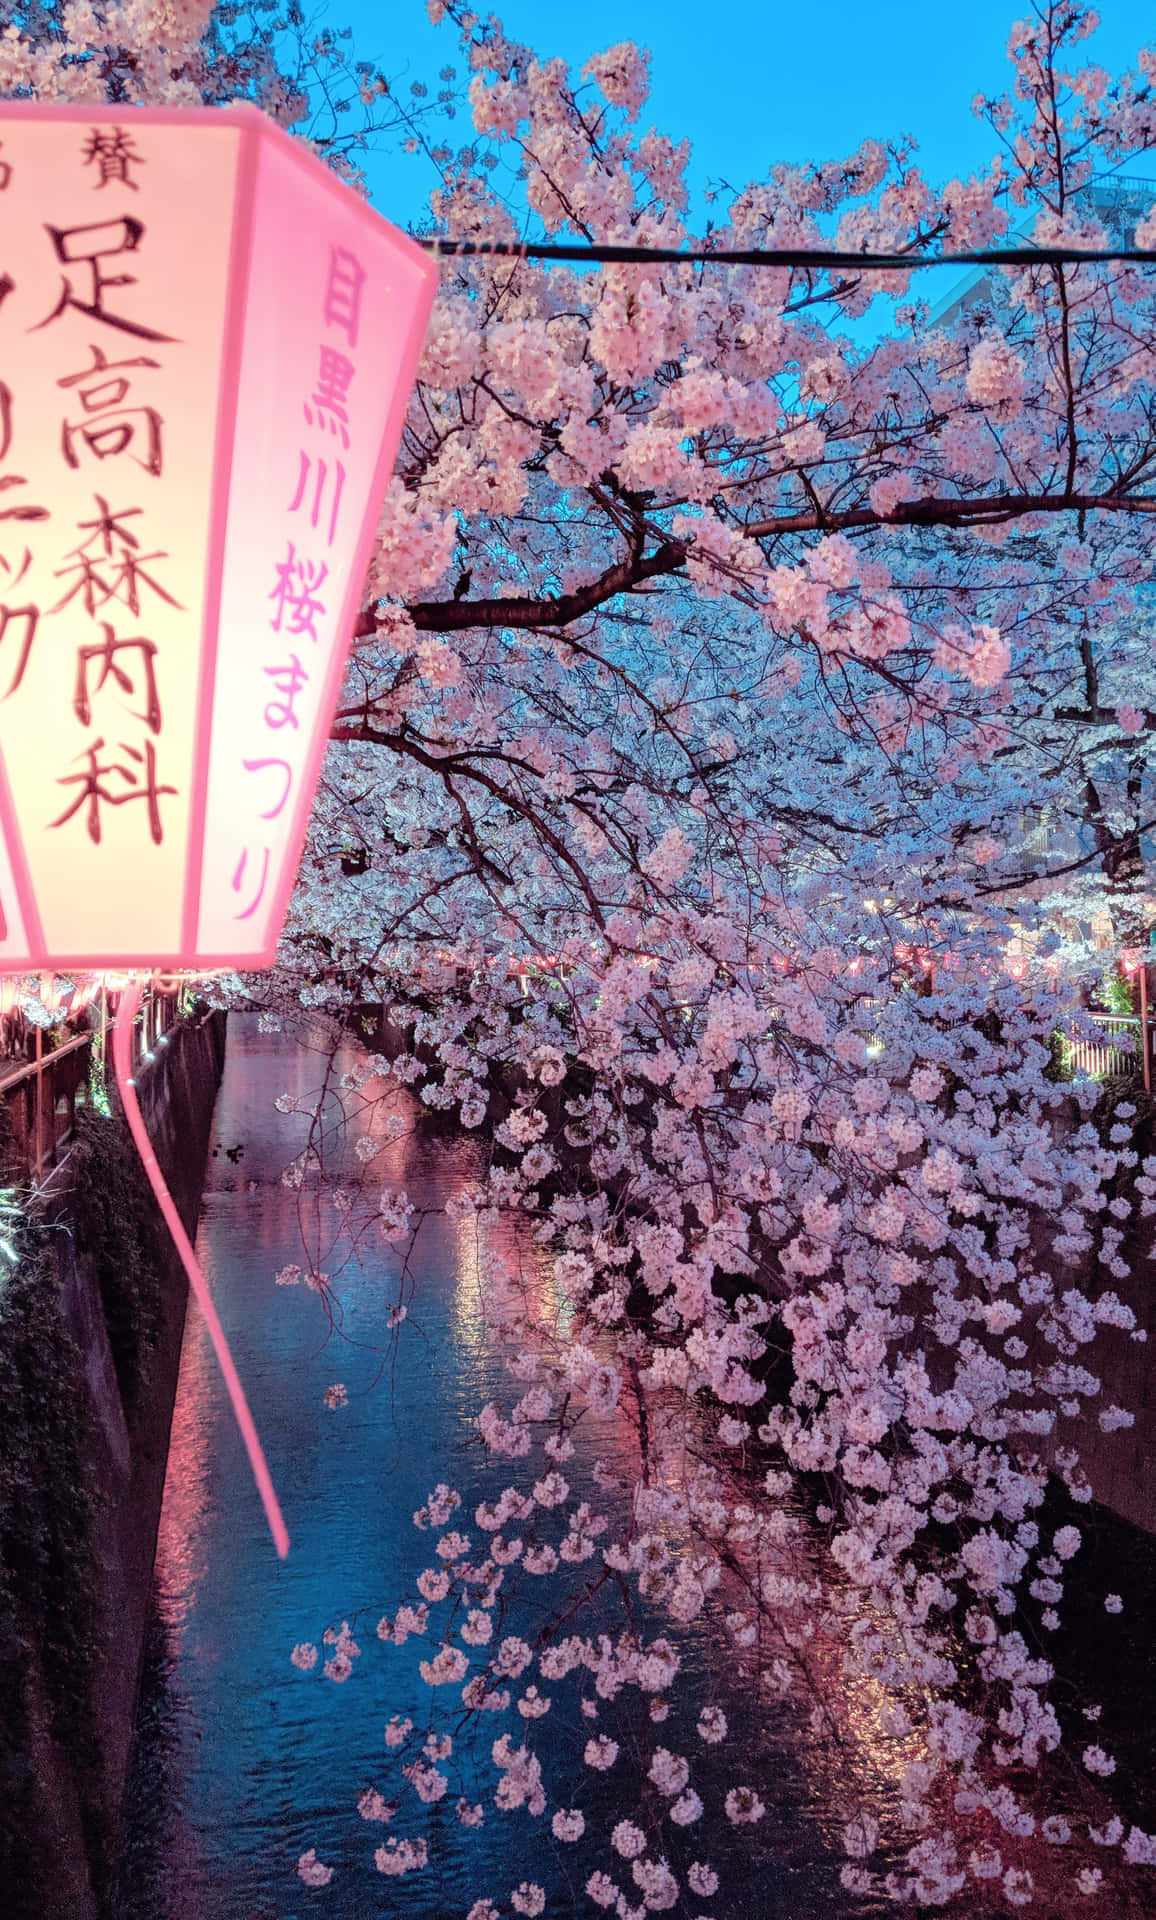 Cherry Blossom Festivalat Dusk Wallpaper